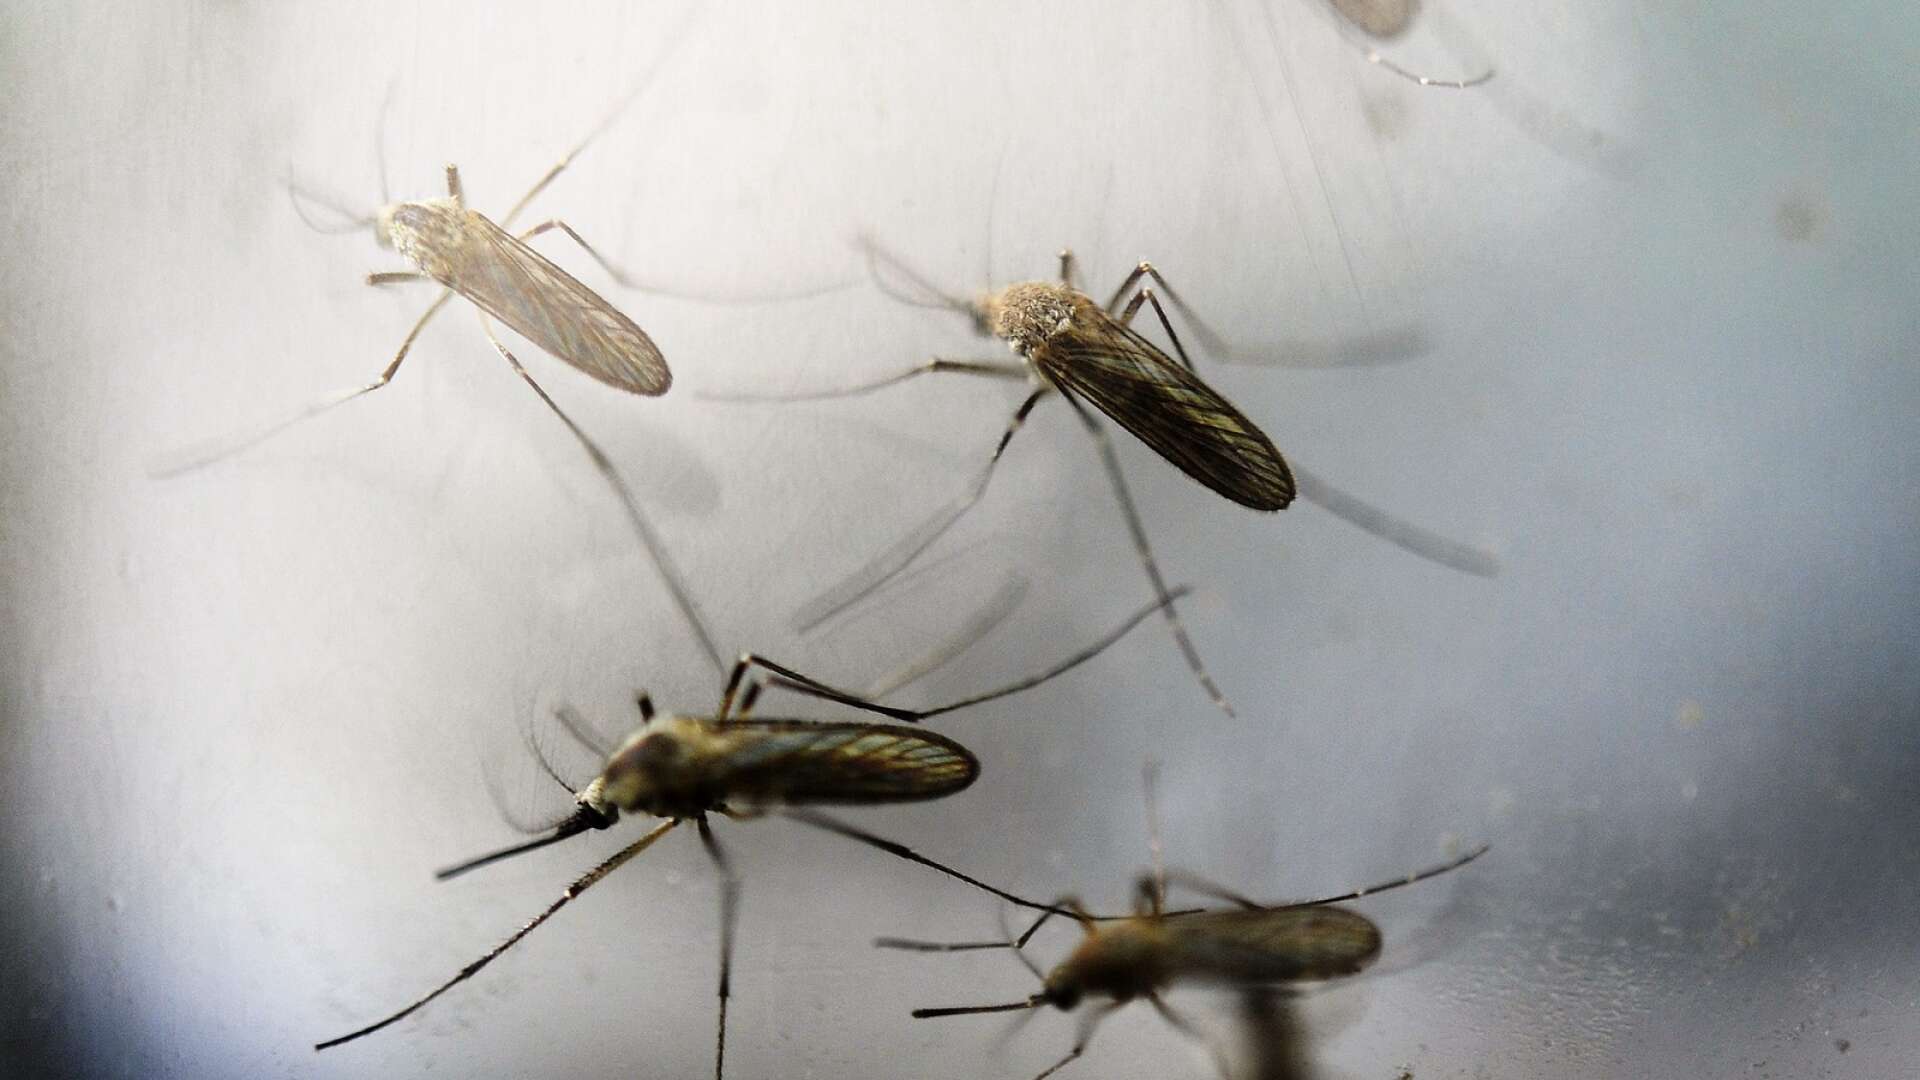 Fjolårets lyckade myggbekämpning kan bli verklighet även 2021.